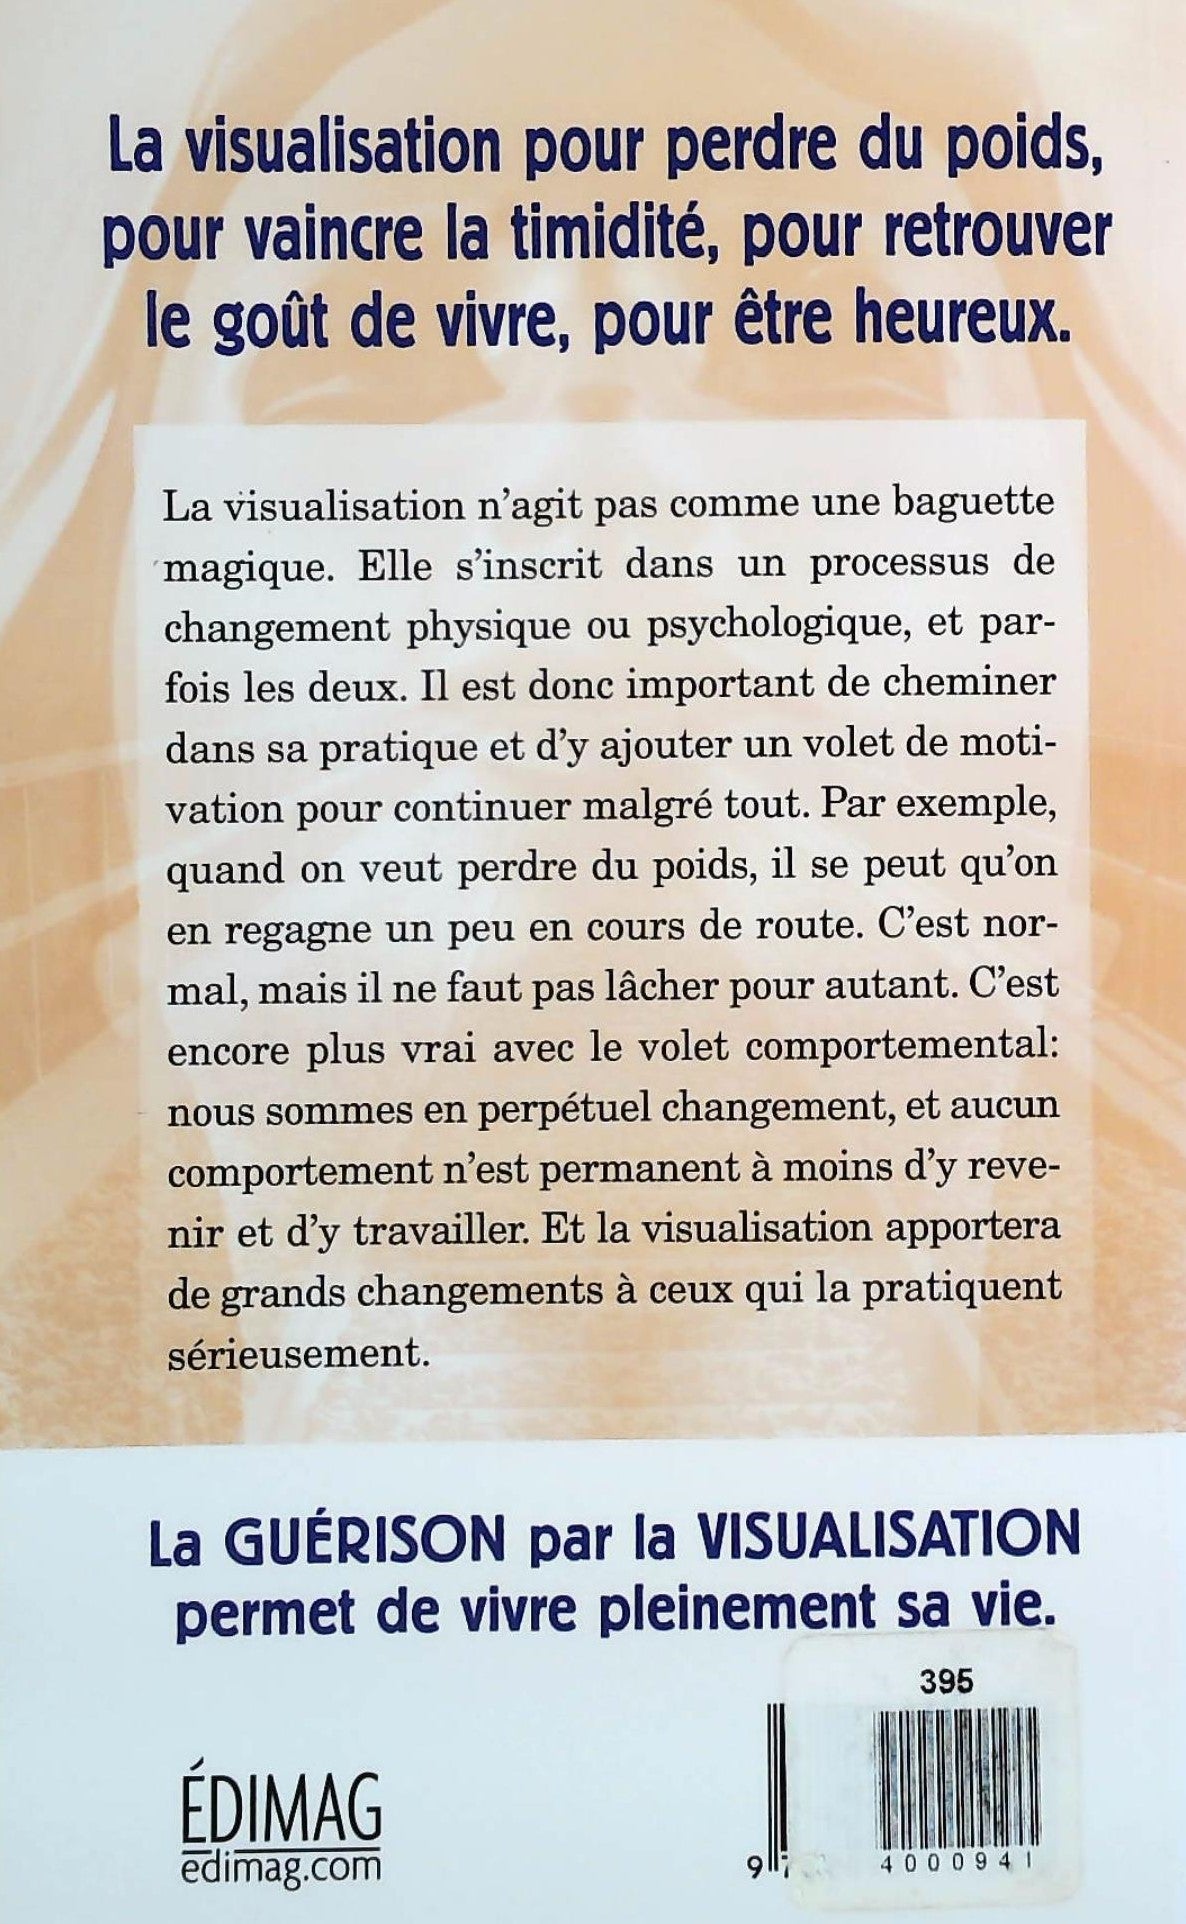 La guérison par la visualisation (Henri Du Chastel)